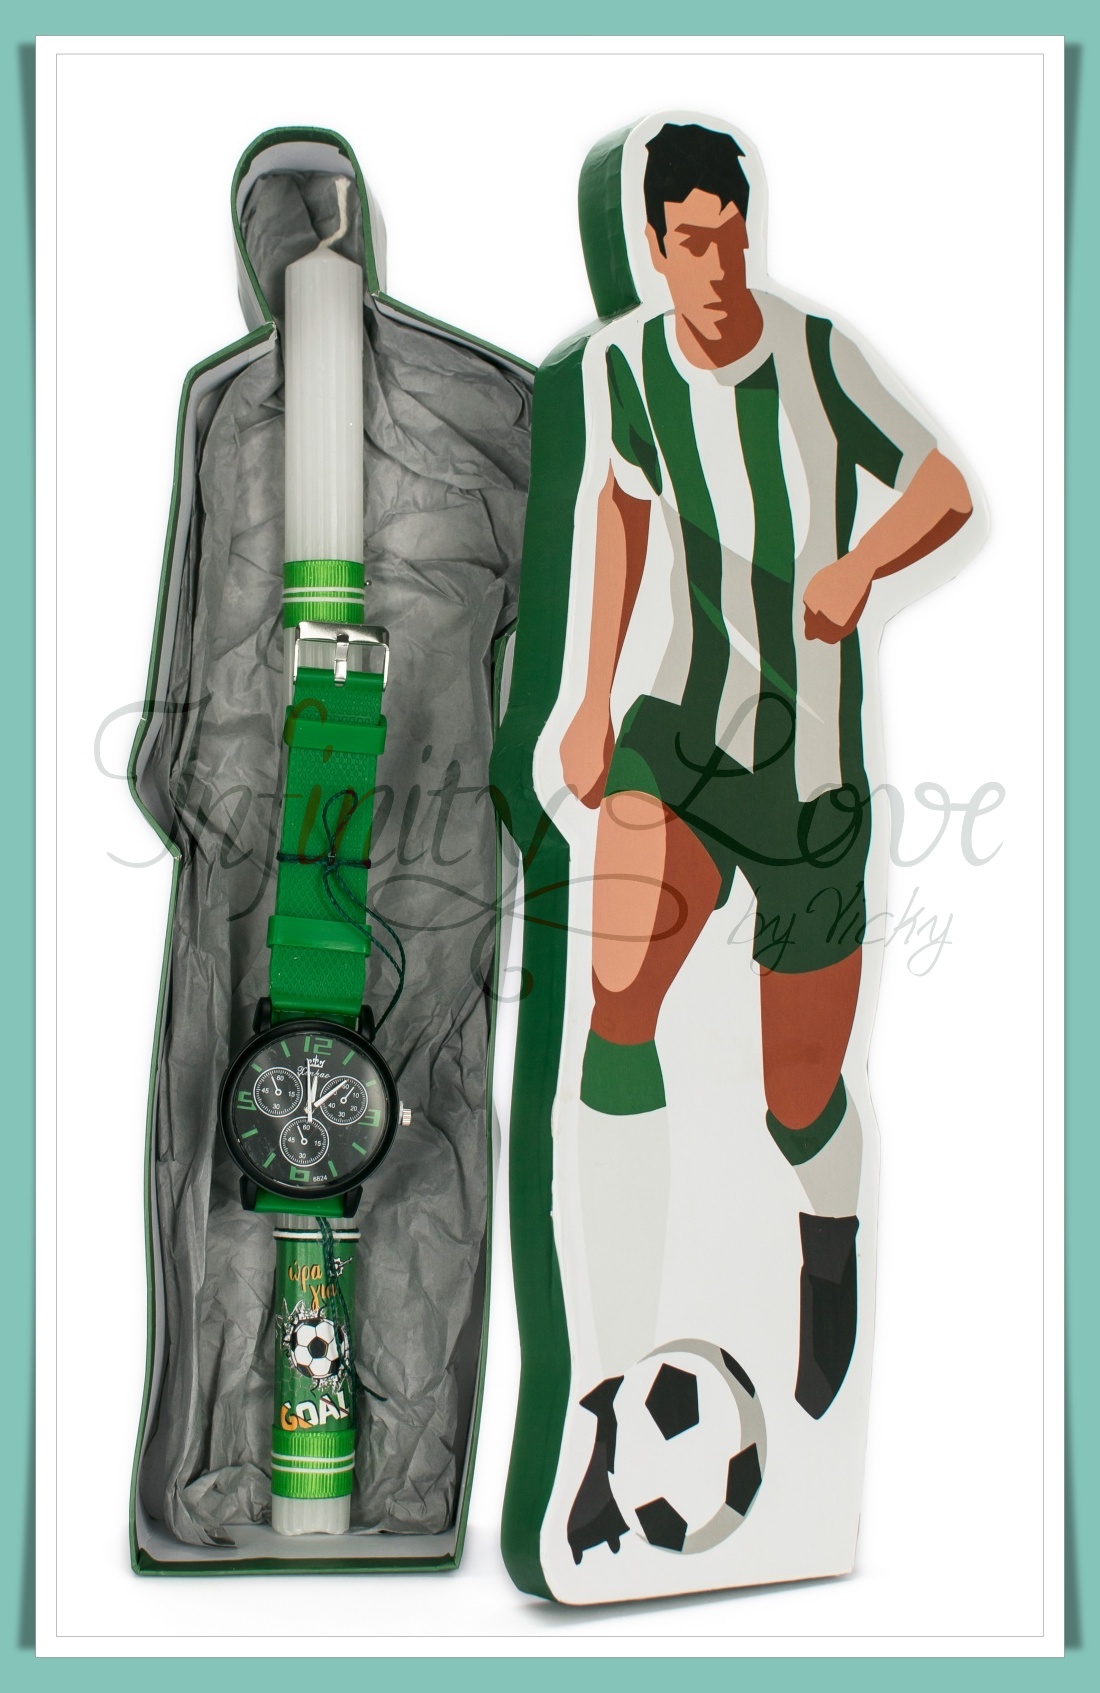 (120-2) Λαμπάδα με ποδοσφαιρικό ρολόι πράσινο